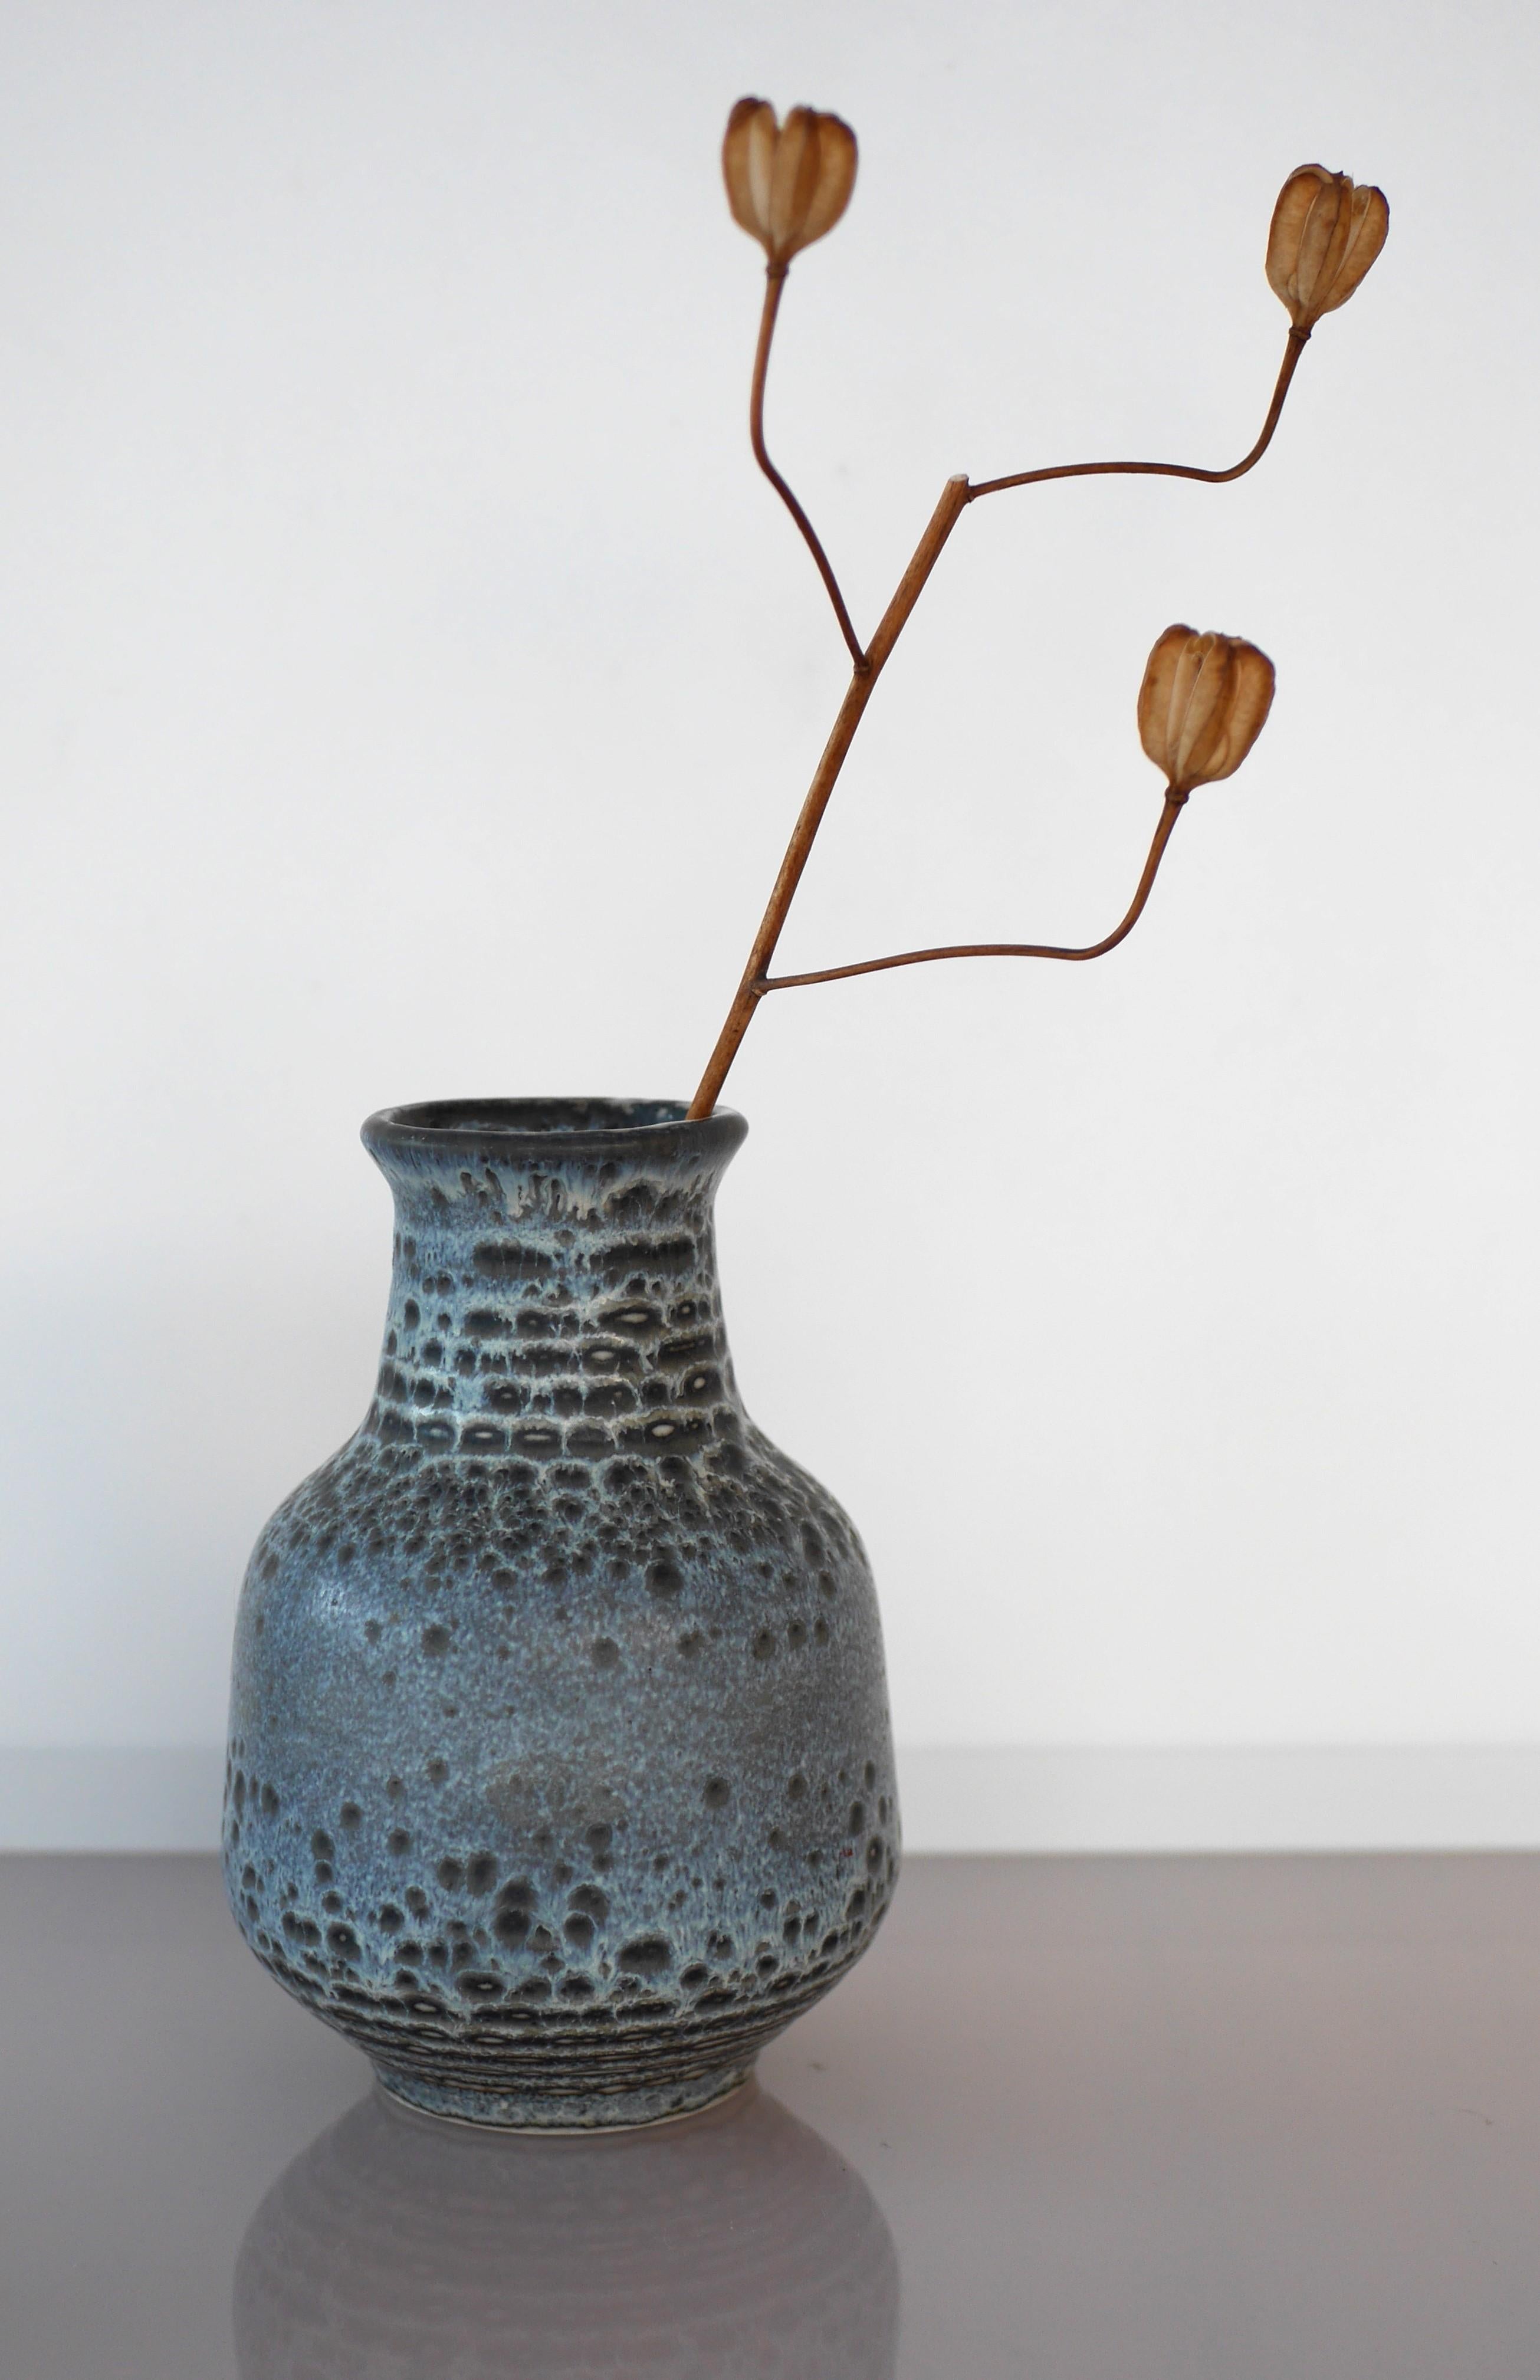 Un extraordinaire et rare vase en céramique vintage fait à la main, conçu par le très talentueux Gunnar Nylund pour Rörstrand. Ce qui rend ce vase si spécial, c'est que même s'il a un design très simple, il a l'apparence la plus élégante et la plus